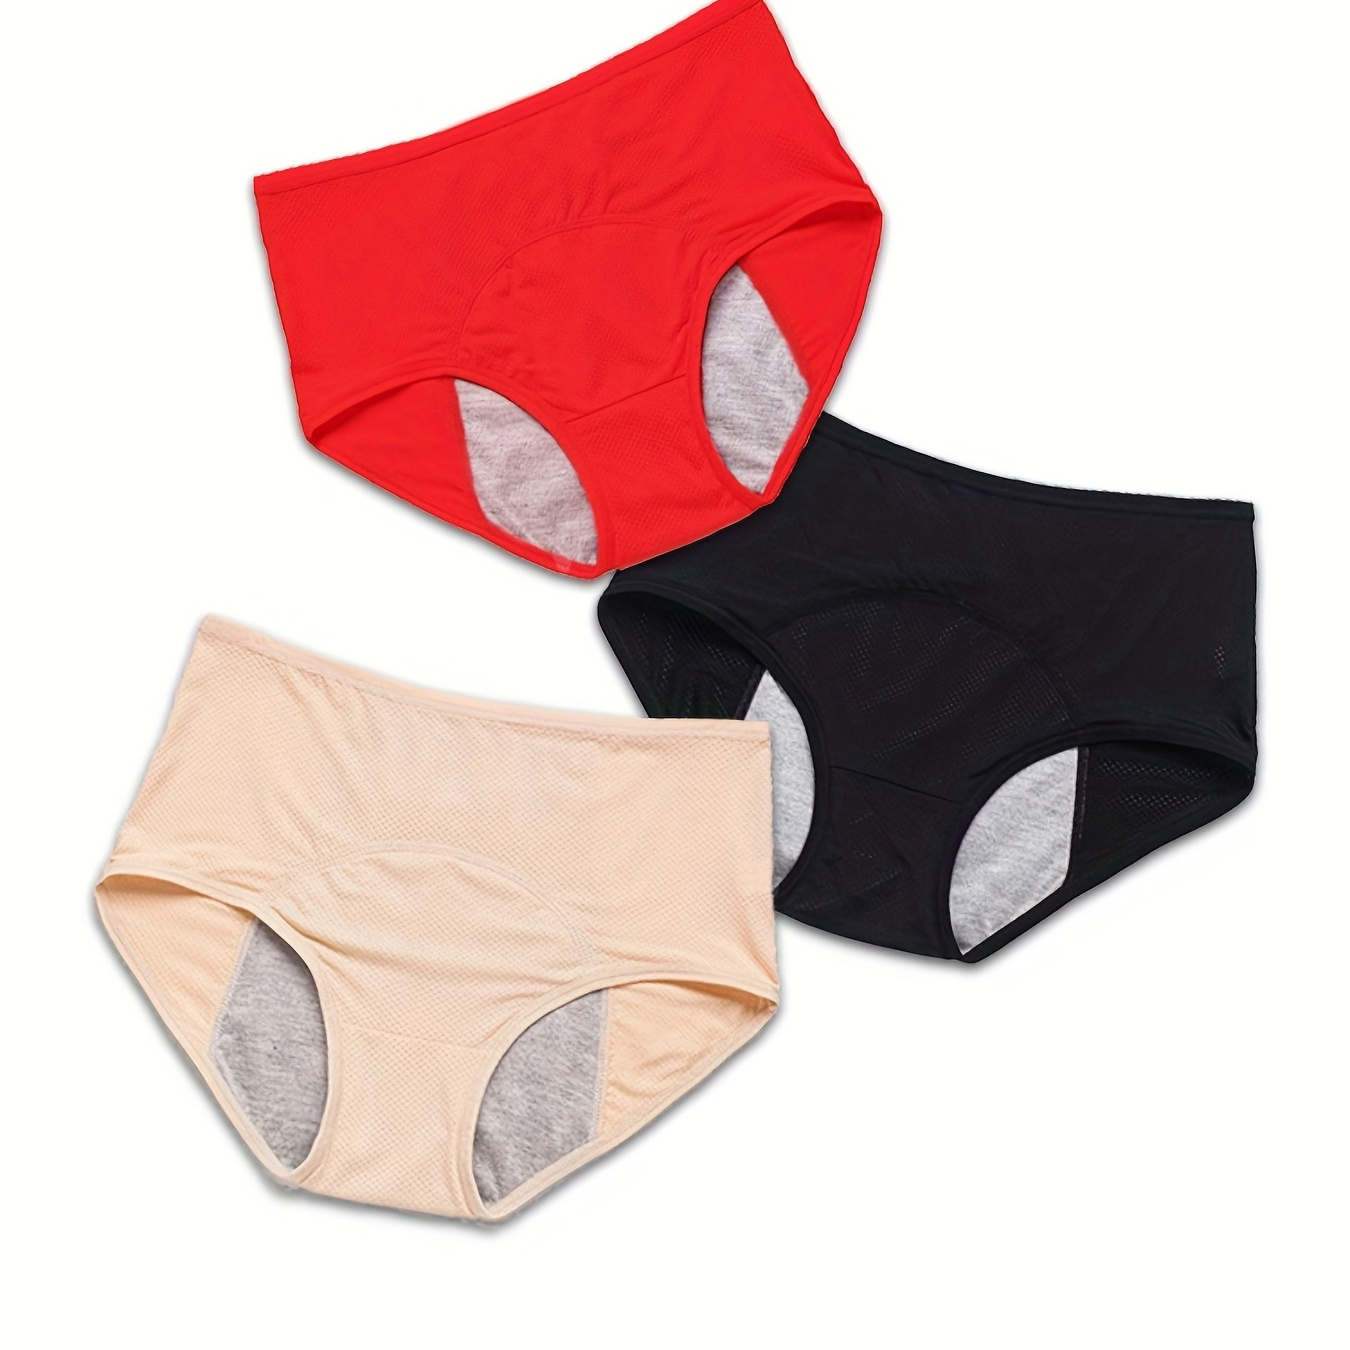 

3 Pack Plus Size Casual Panties Set, Women's Plus Solid High Rise Ventilative Mesh Top Design Breathable Leakproof Period Briefs 3pcs Set